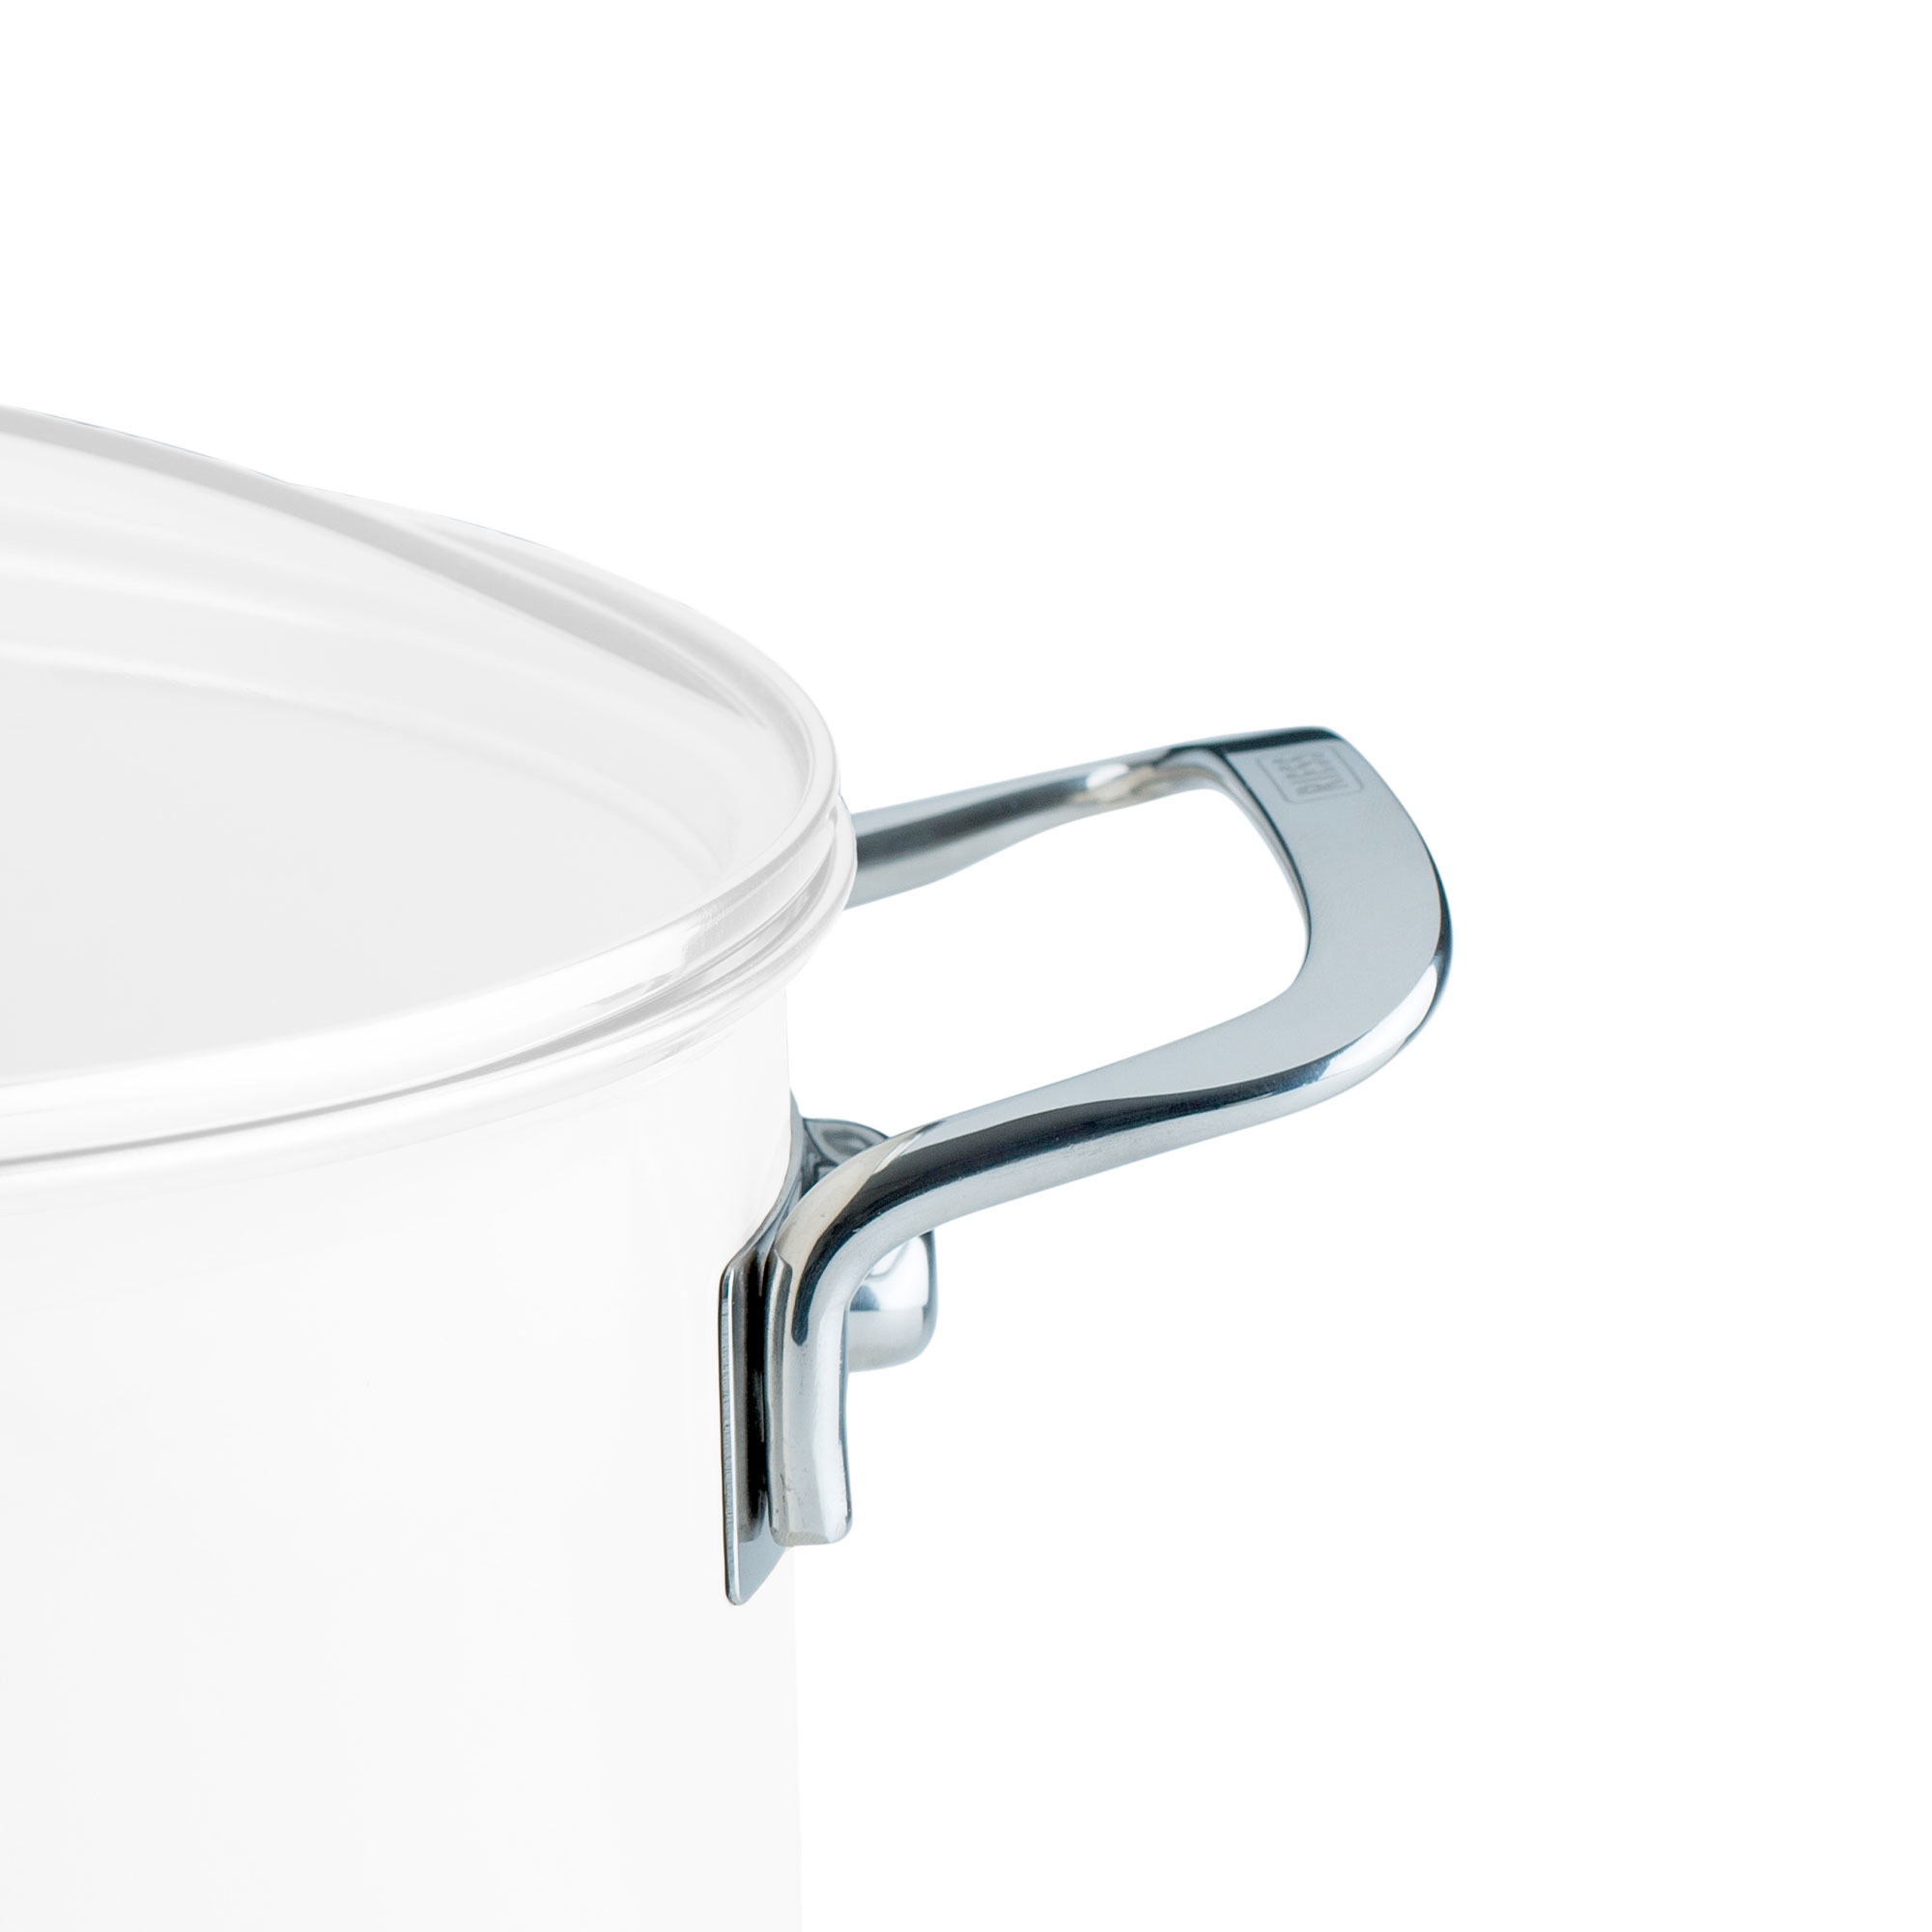 Riess NOUVELLE - replacement side handle Nouvelle for pot/casserole 24 cm